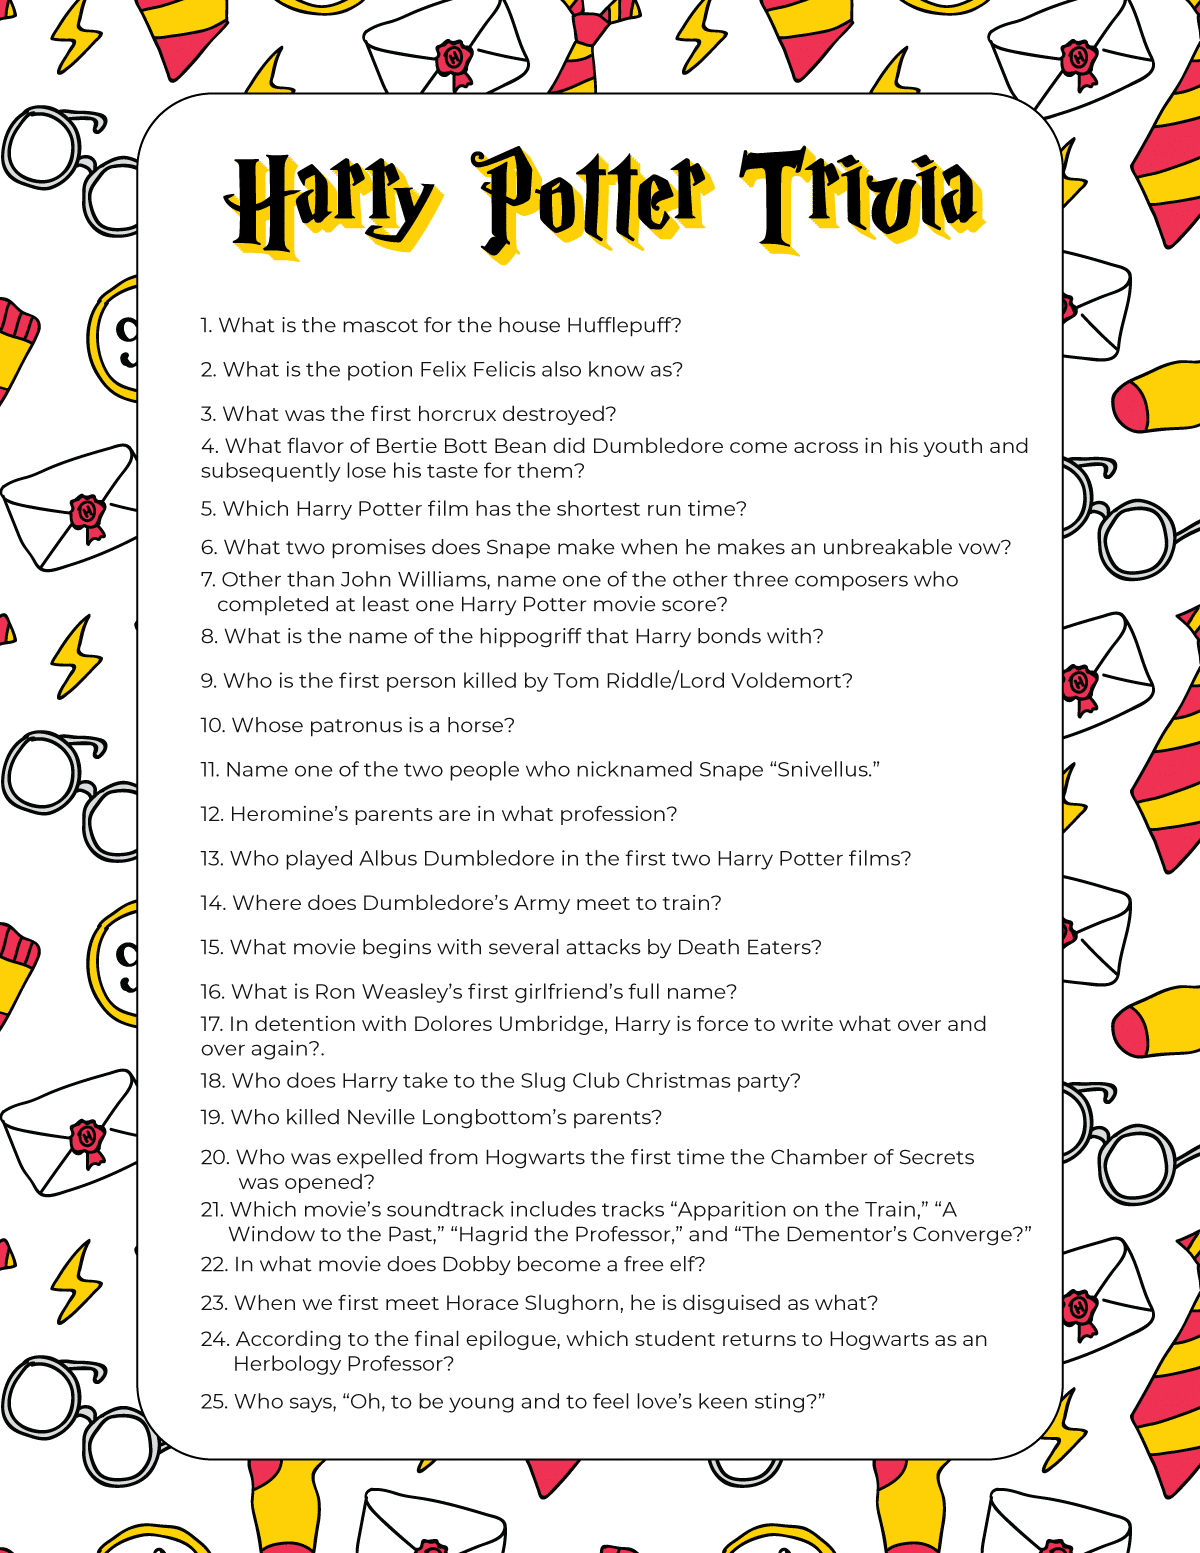 Questions Quiz Harry Potter QEUST